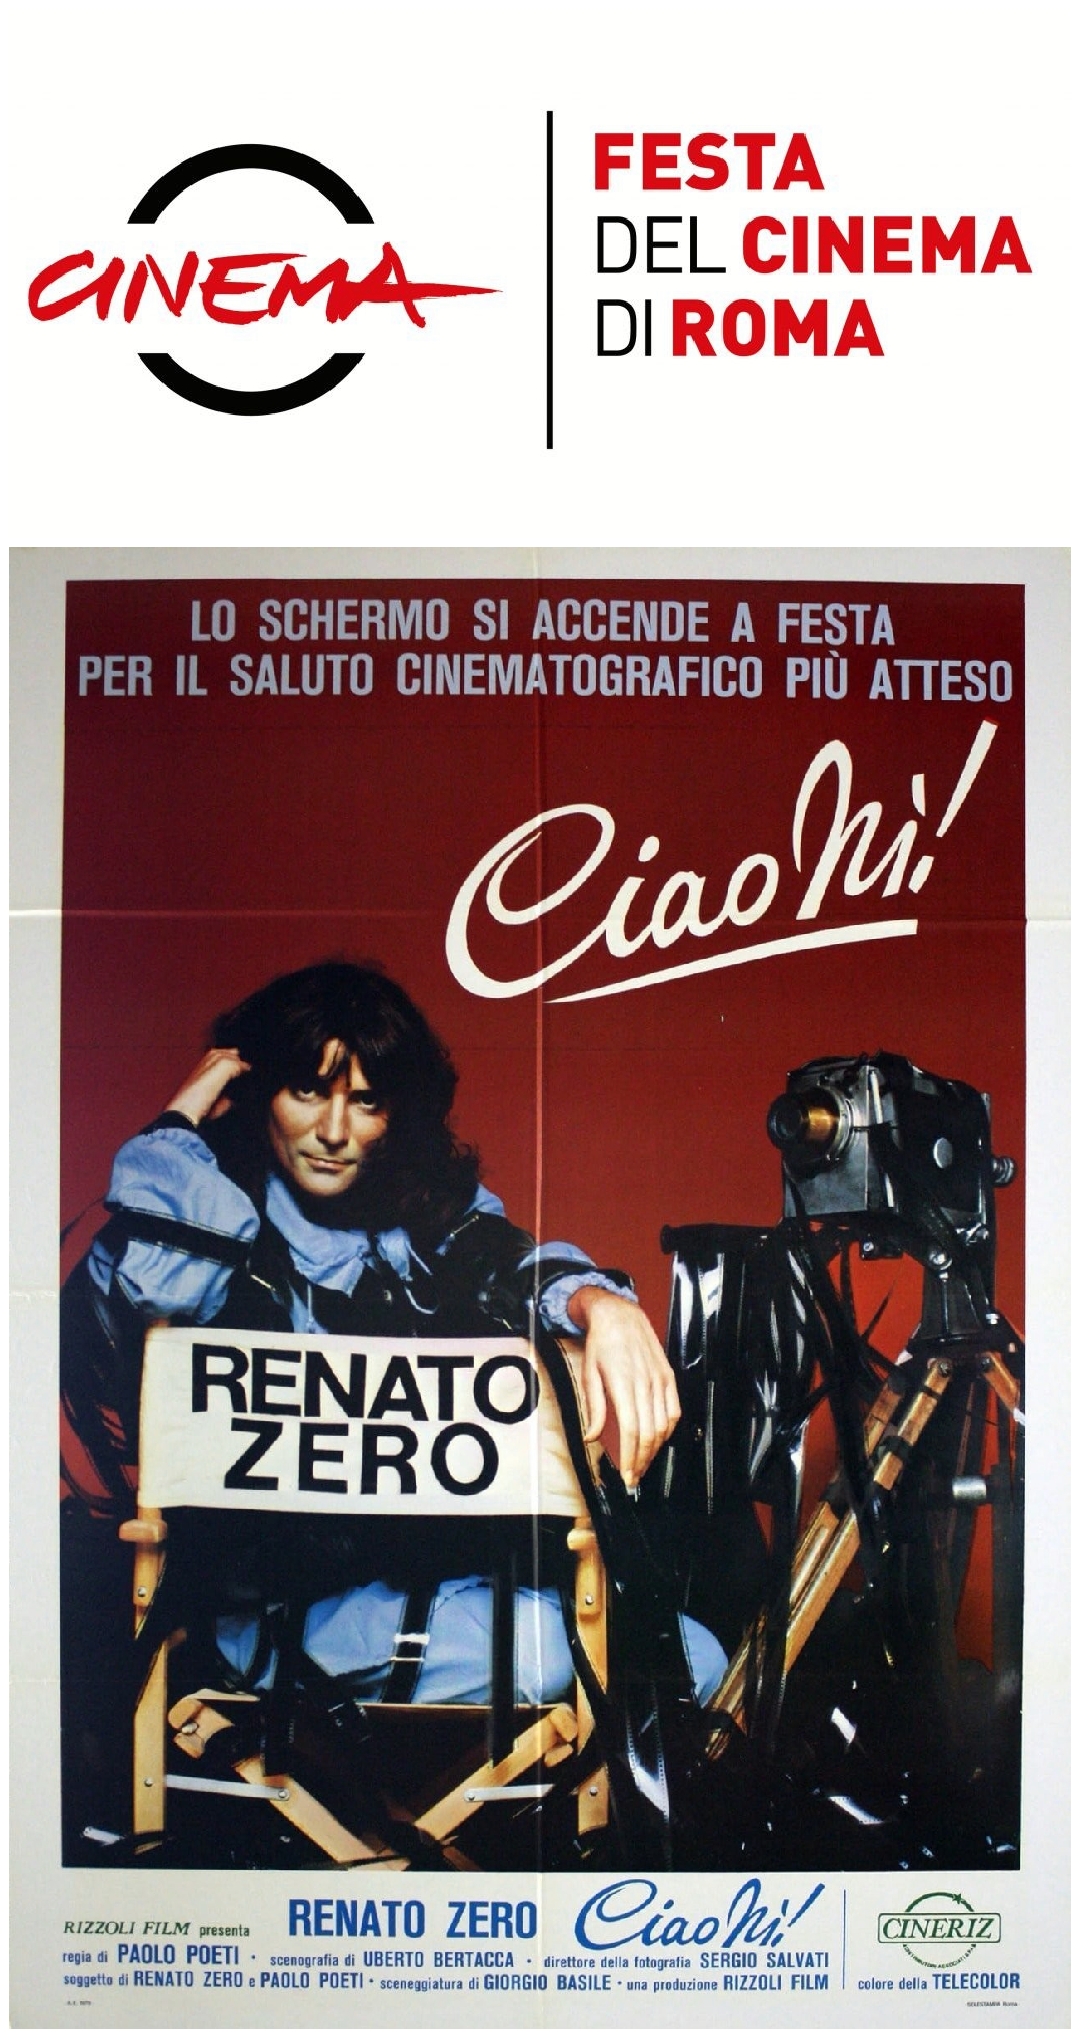 “CIAO NI’!”, Festival del Cinema di Roma